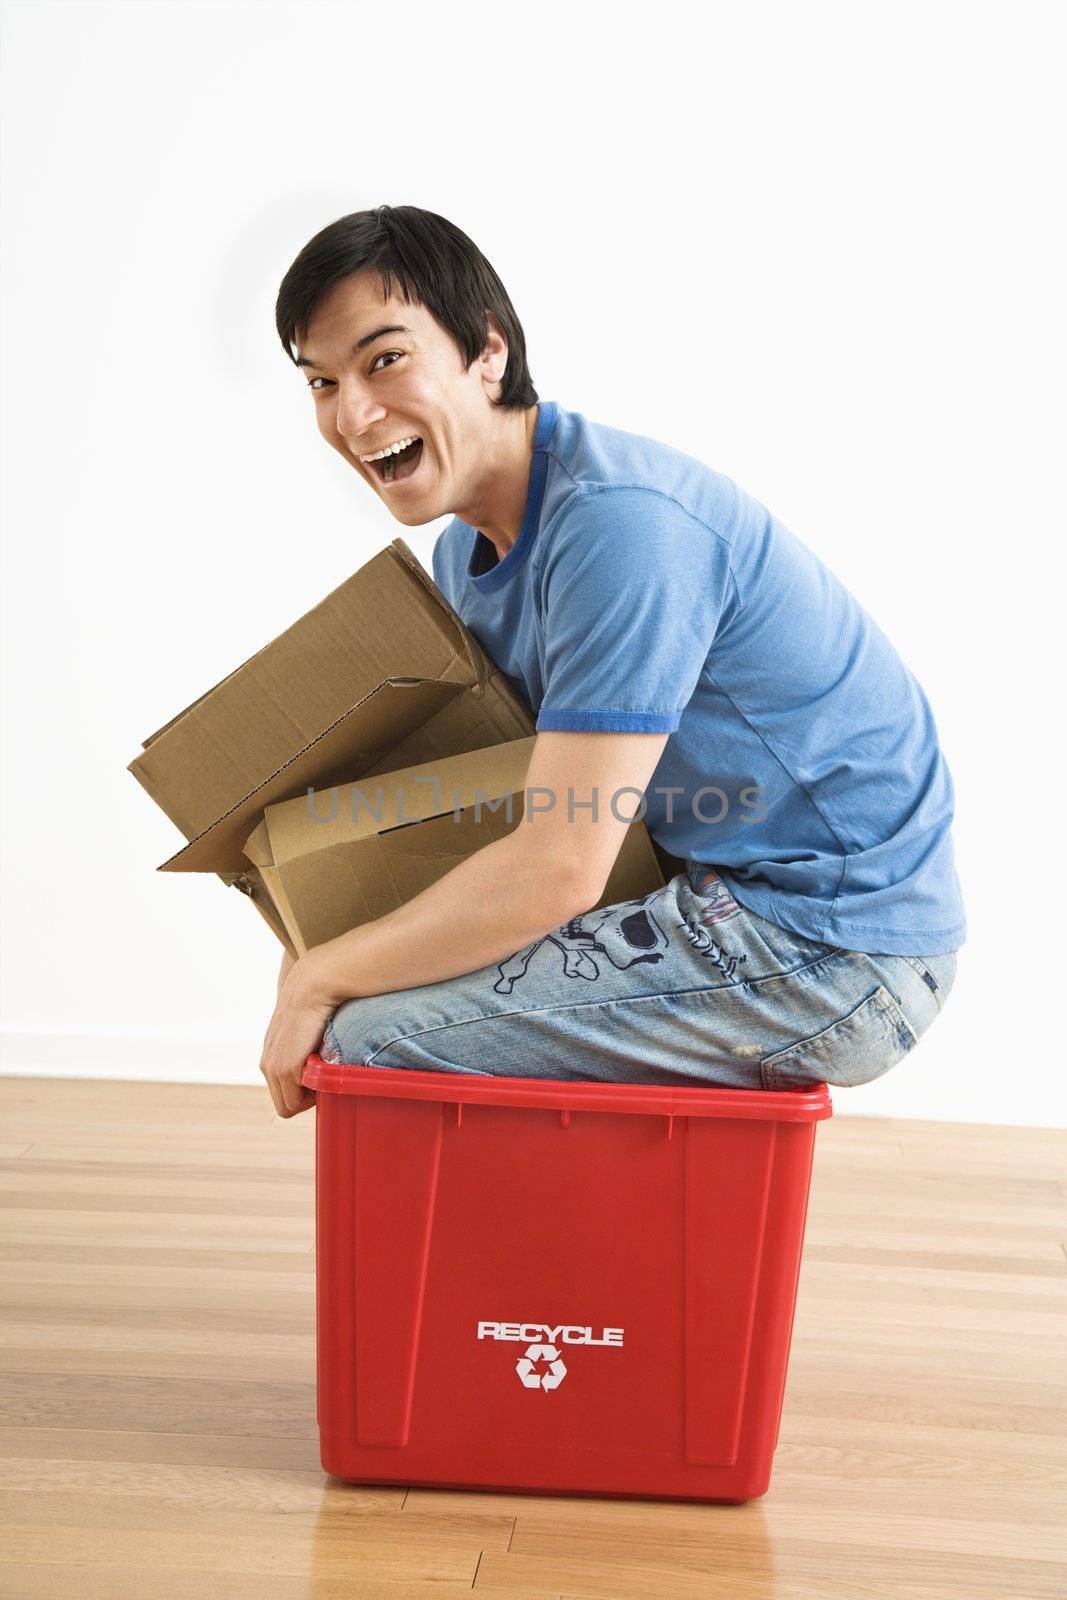 Man in recycling bin. by iofoto